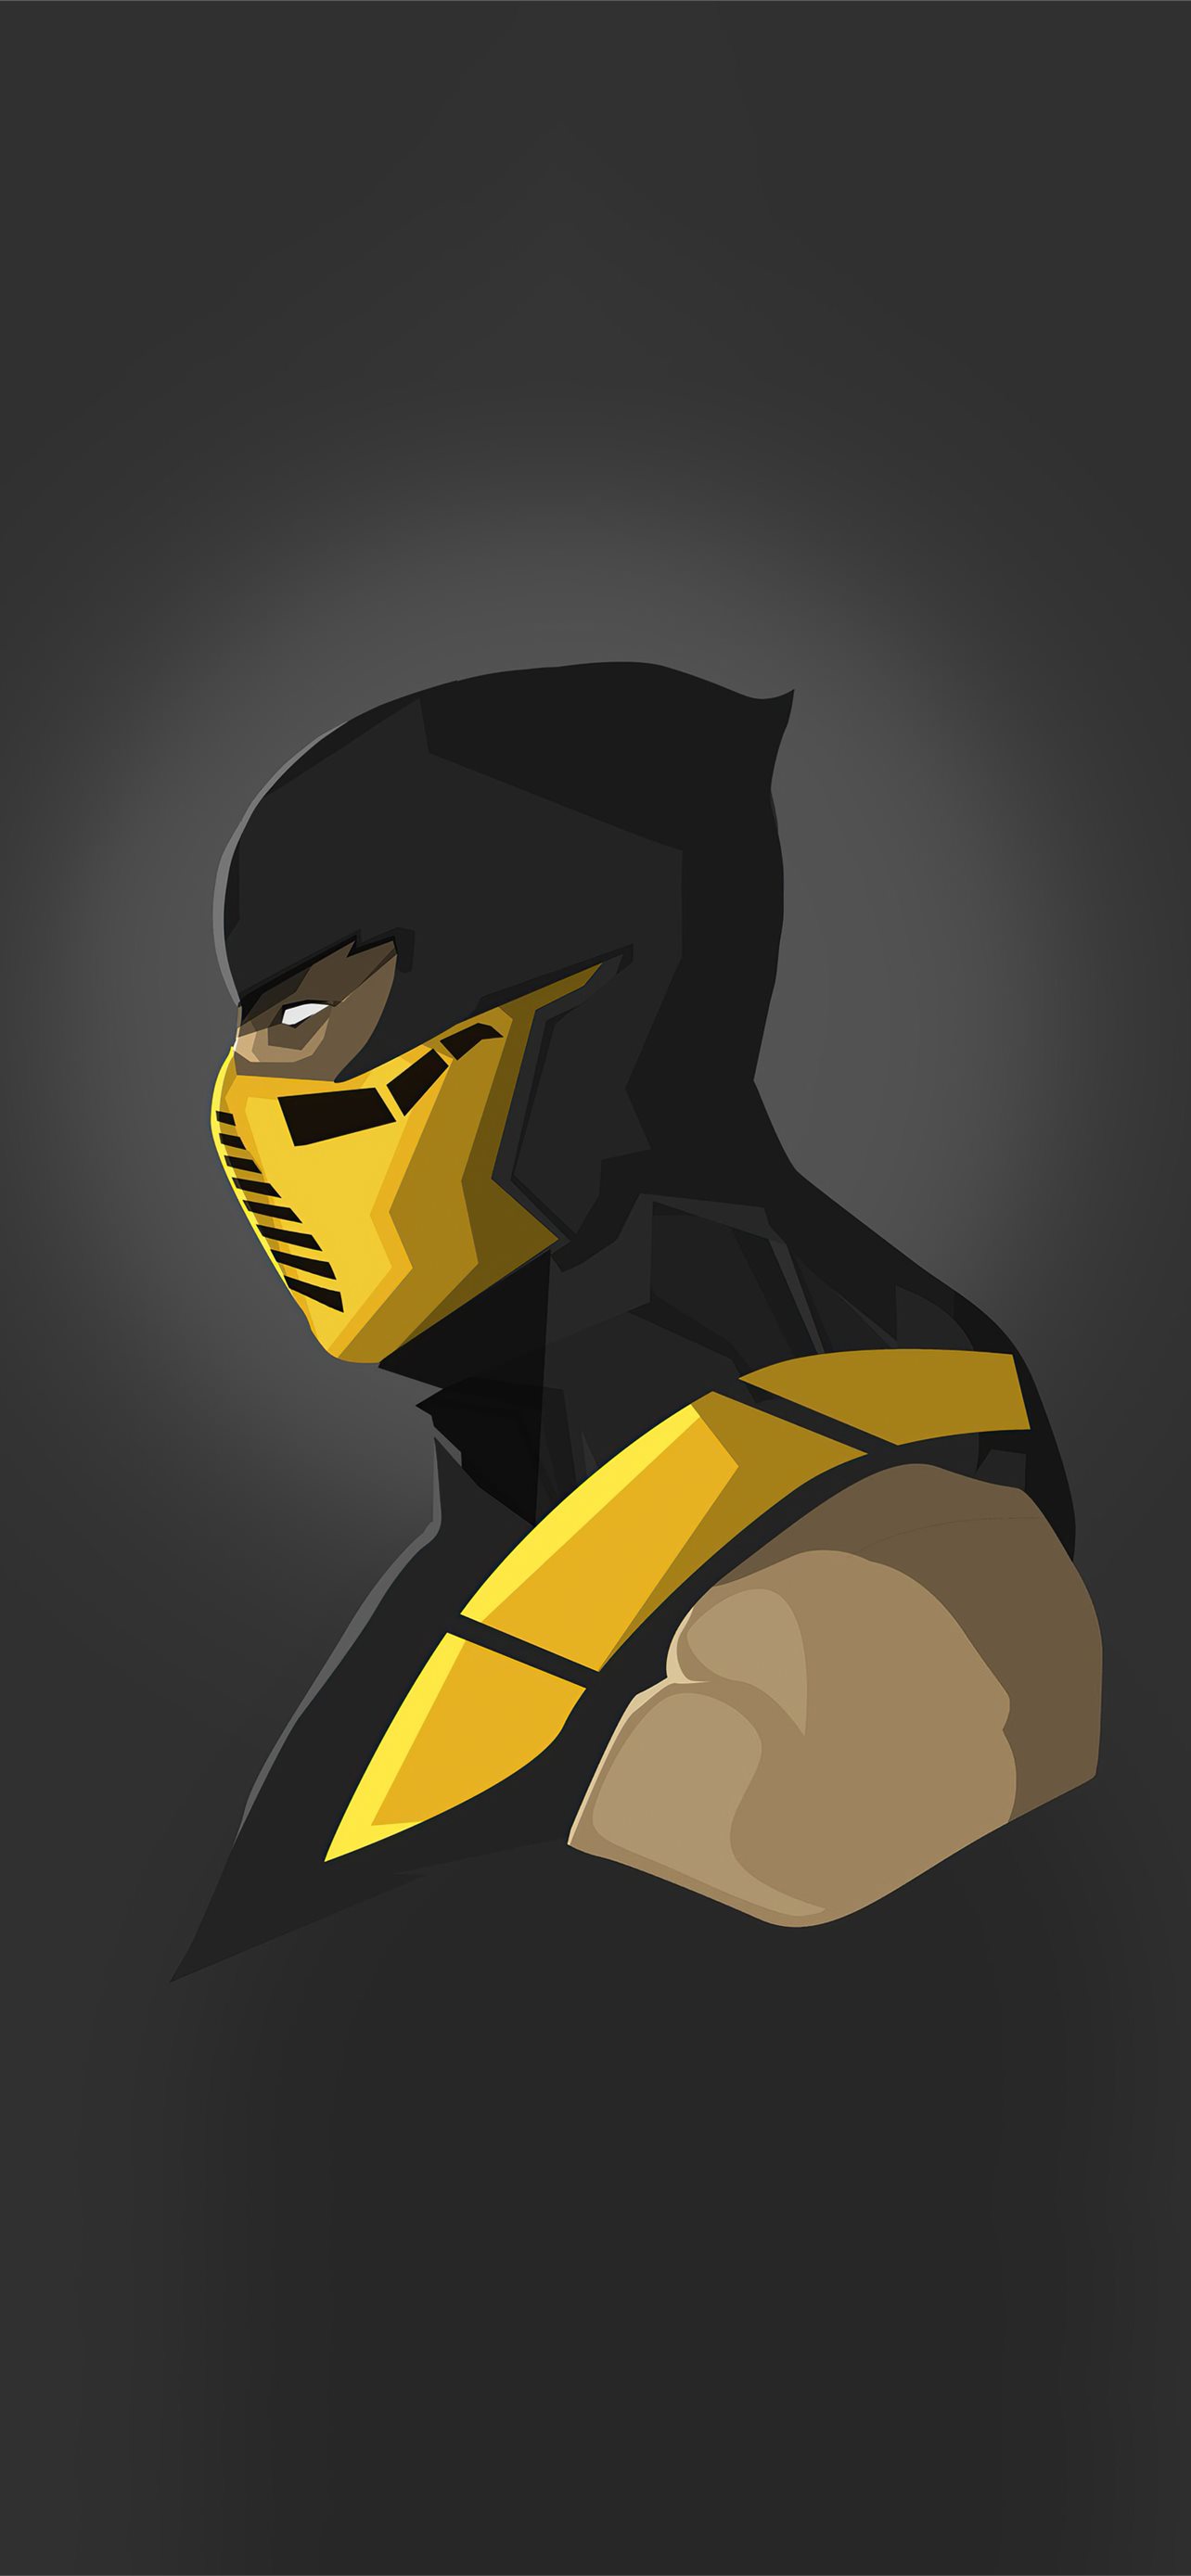 Character from Mortal Kombat Scorpion Wallpaper 4k Ultra HD ID4339